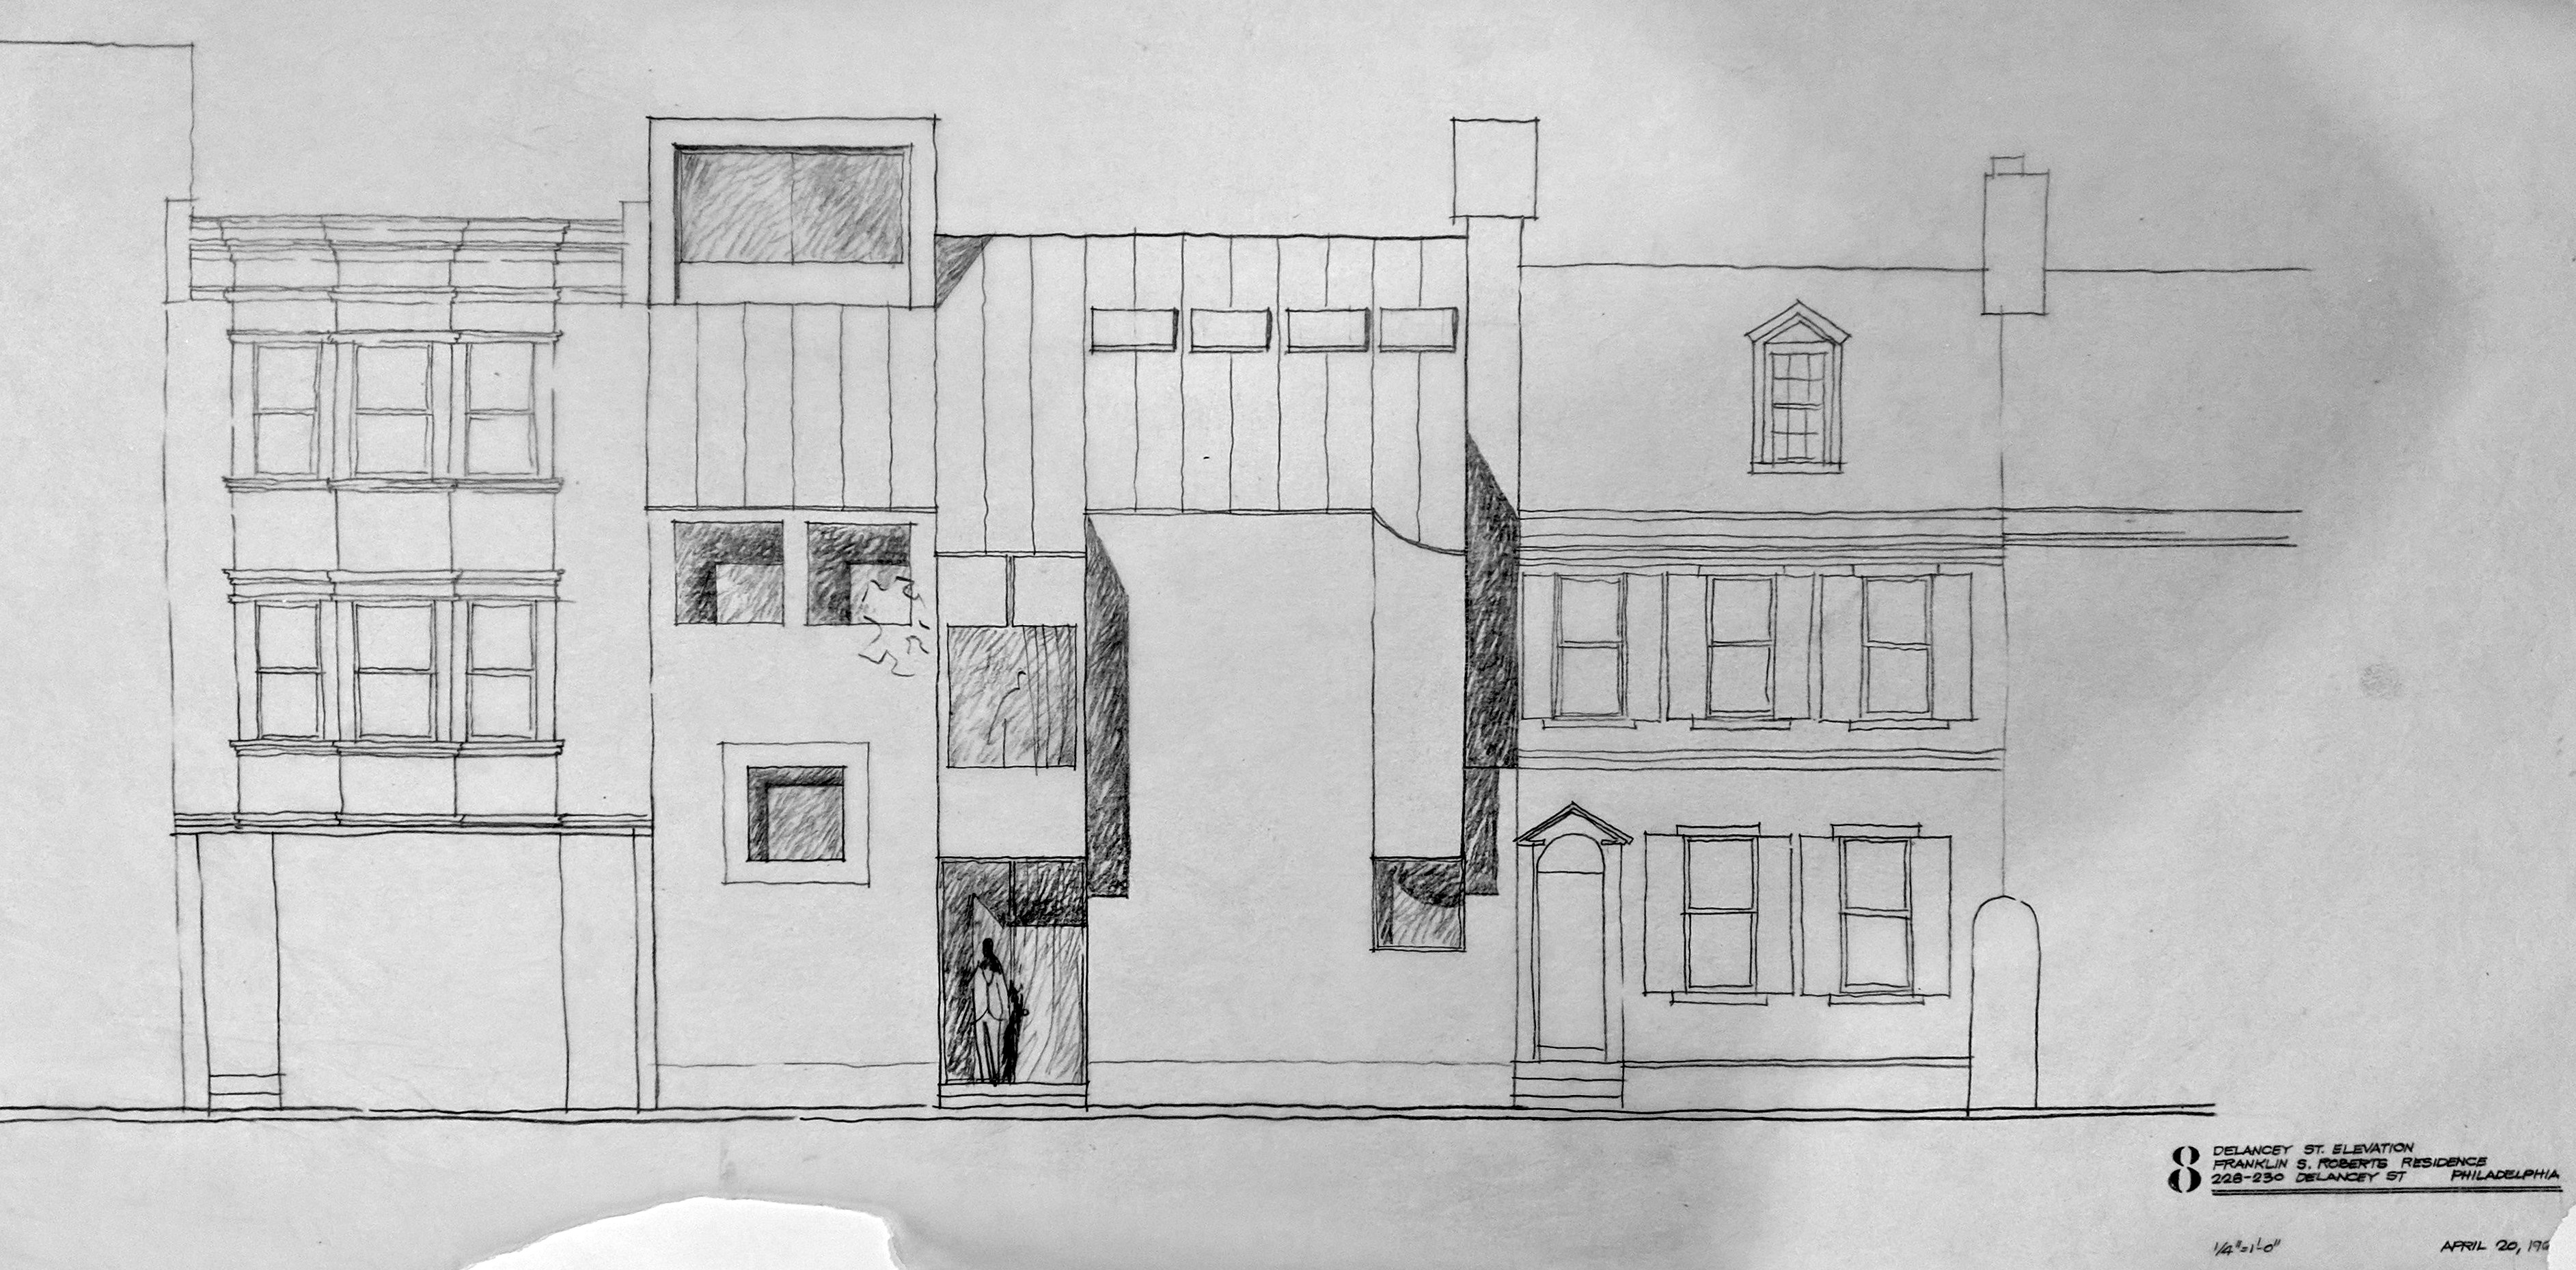 <p>228-230 Delancey Street - Alternate schematic elevation</p>
